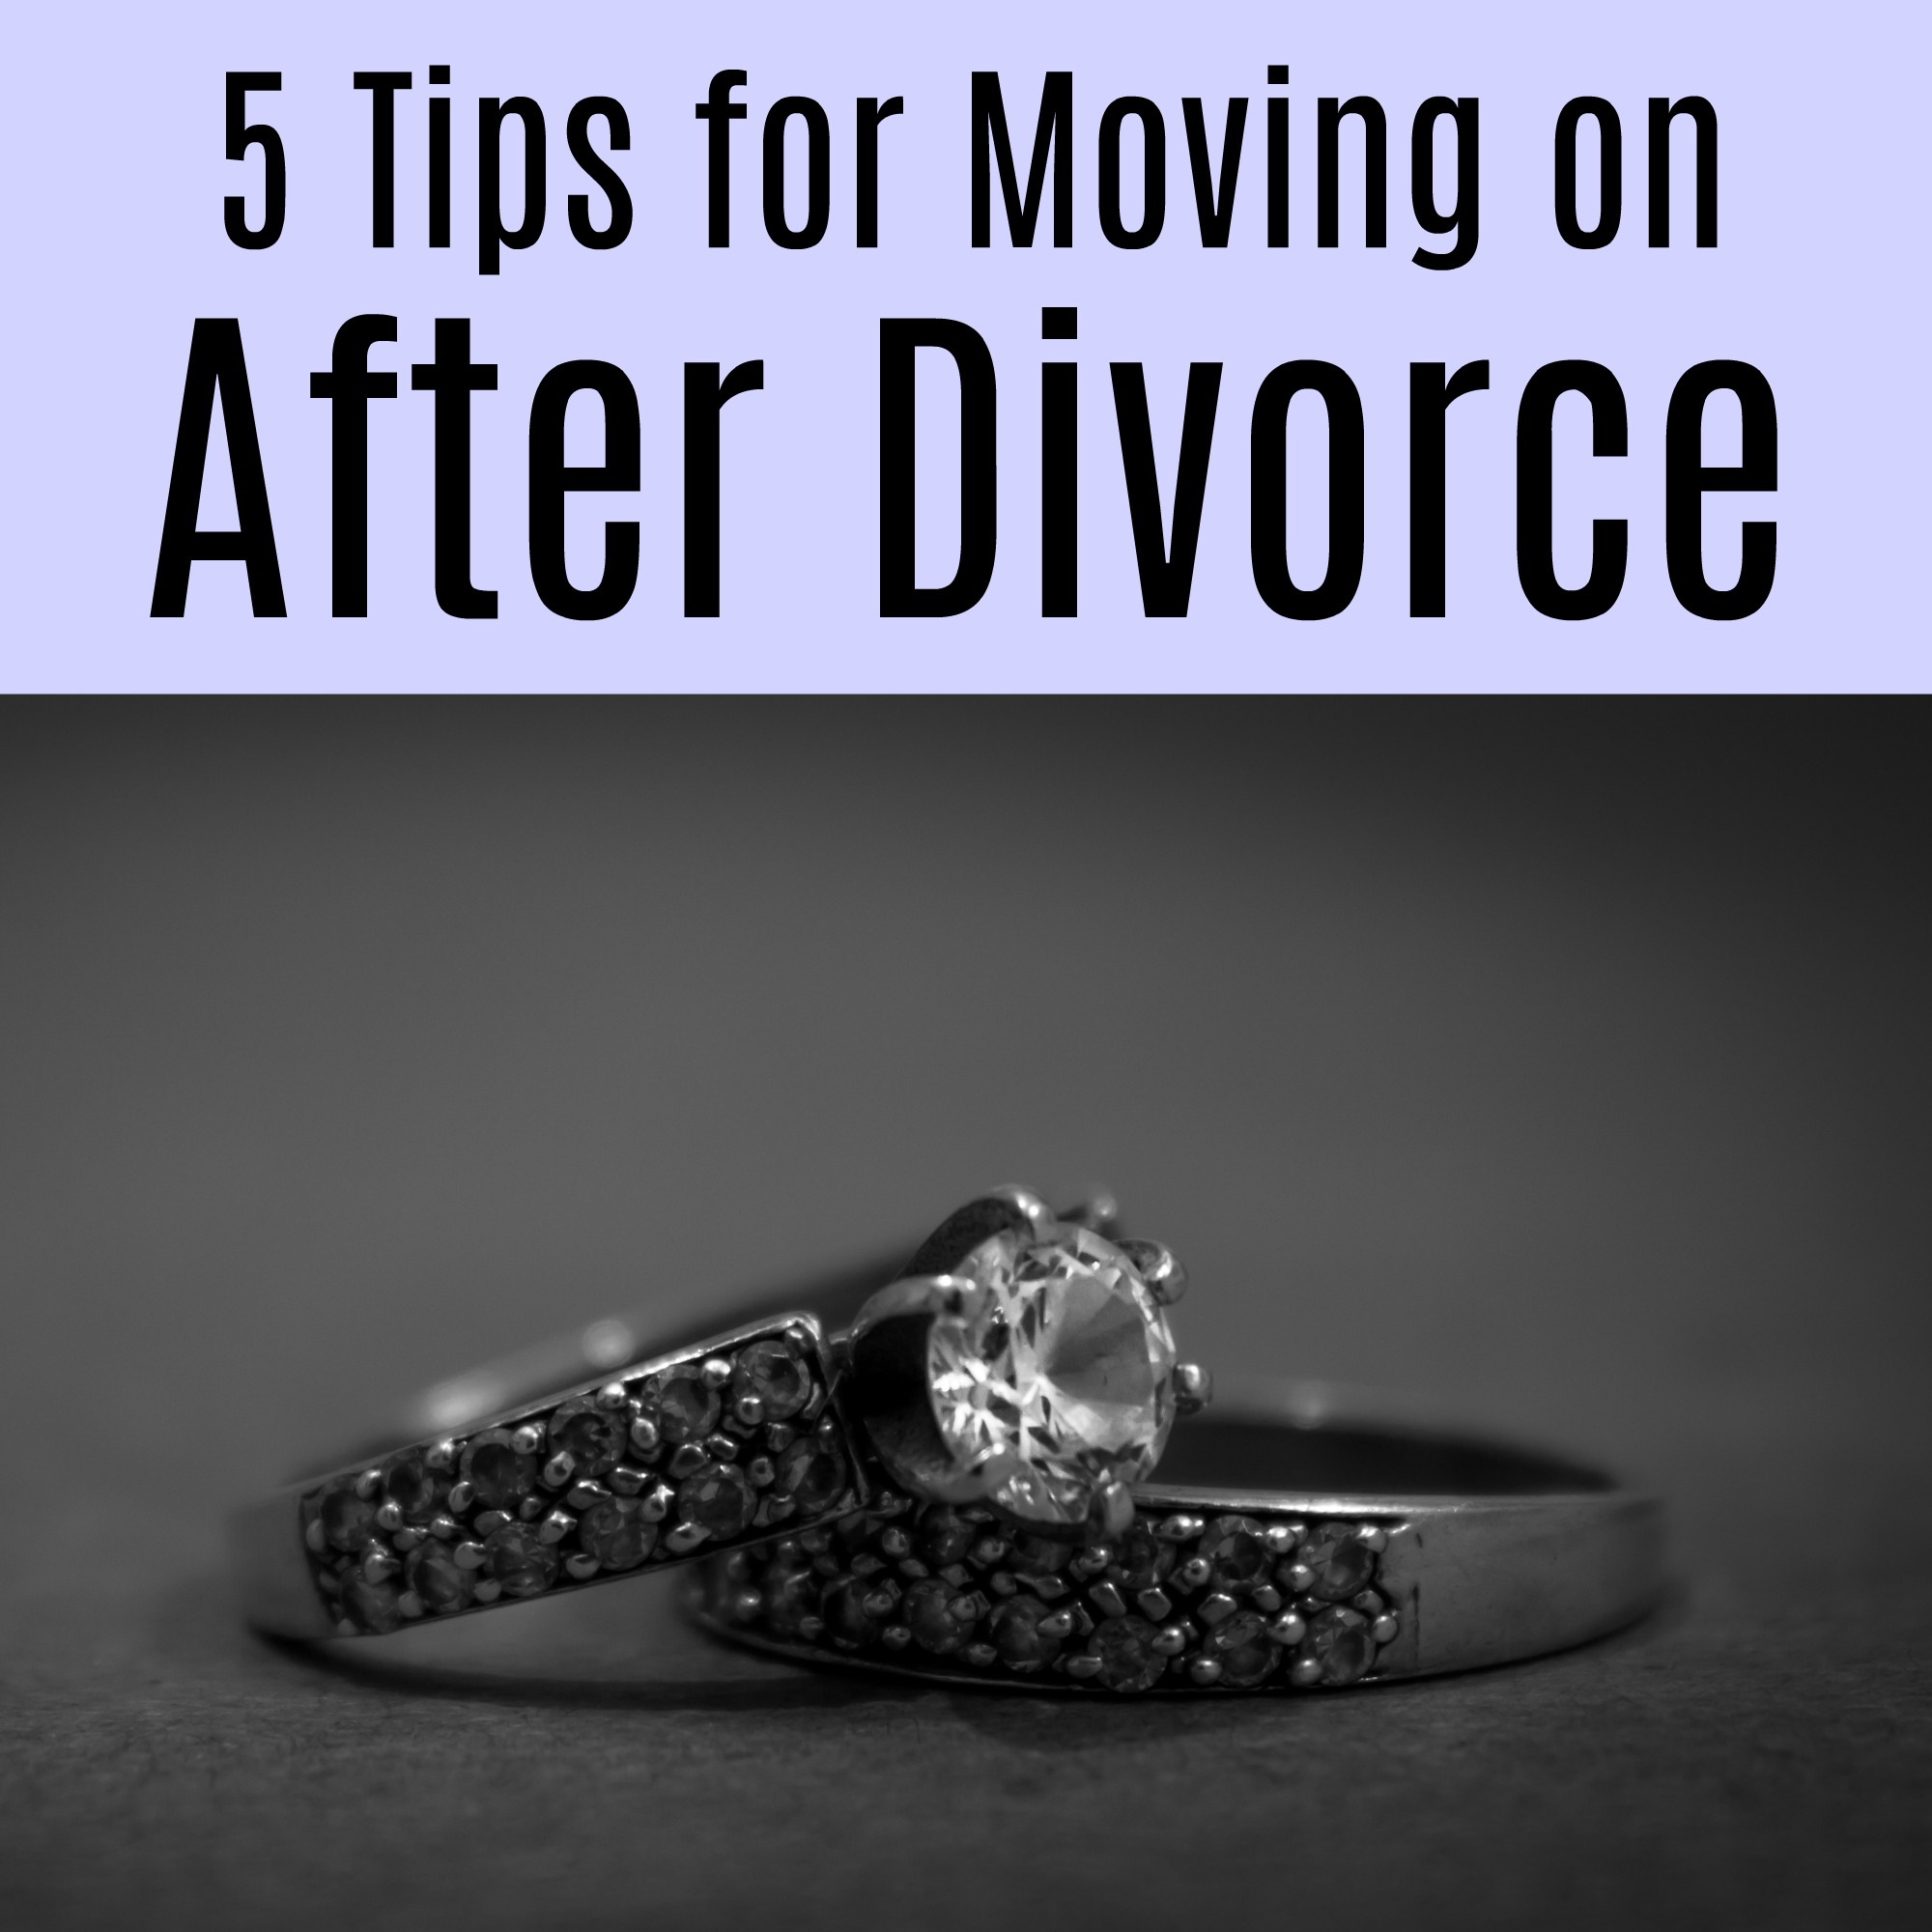 Moving On After Divorce